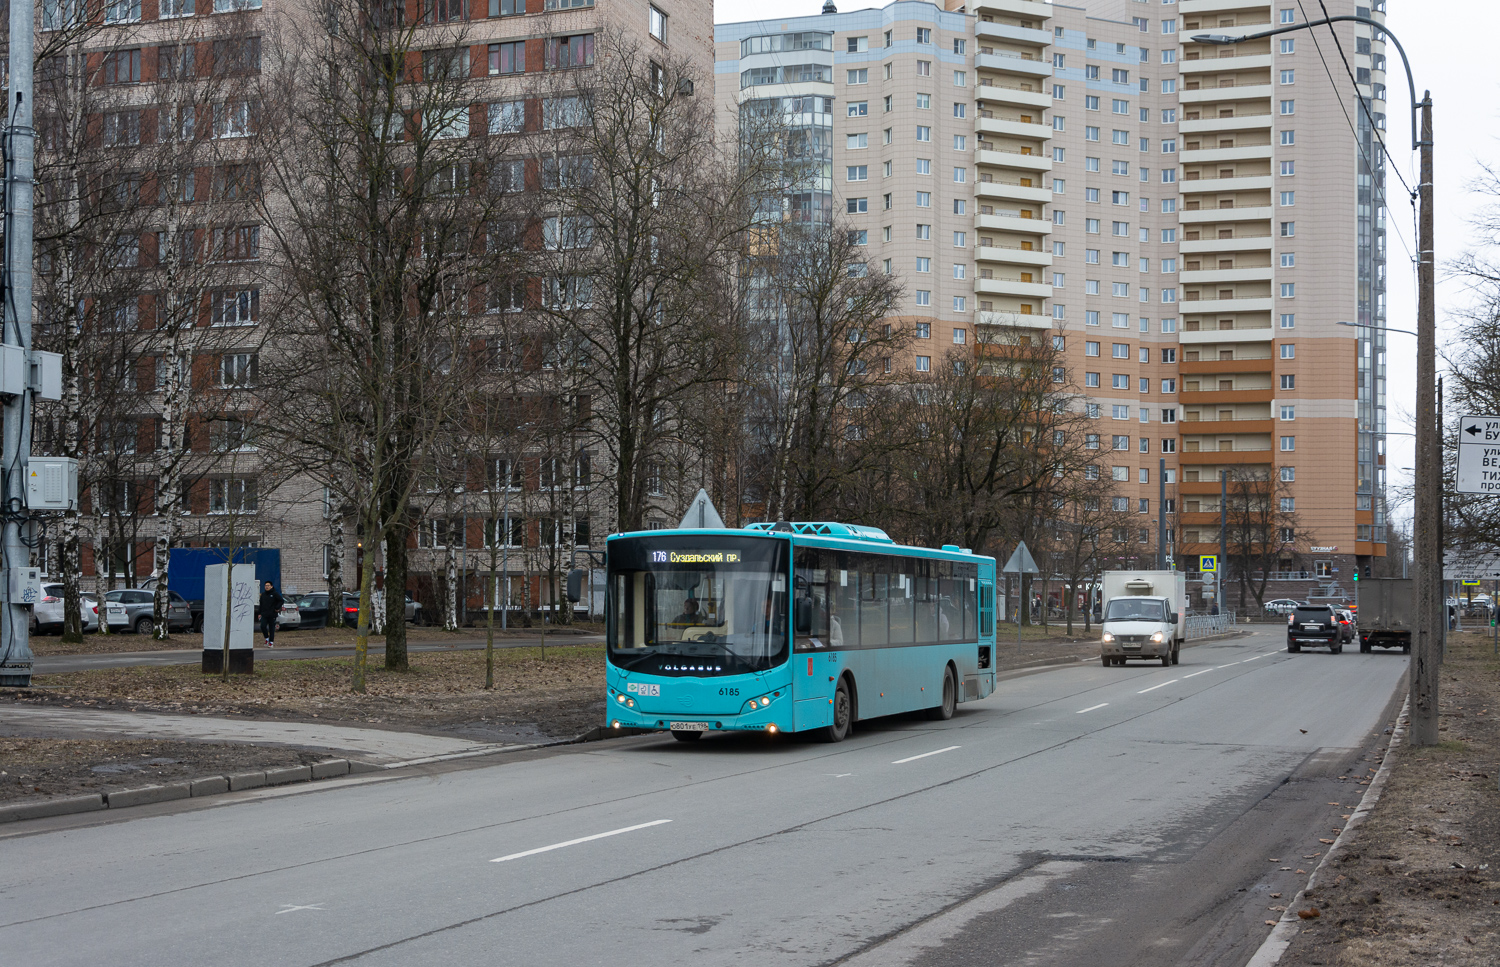 サンクトペテルブルク, Volgabus-5270.G2 (LNG) # 6185